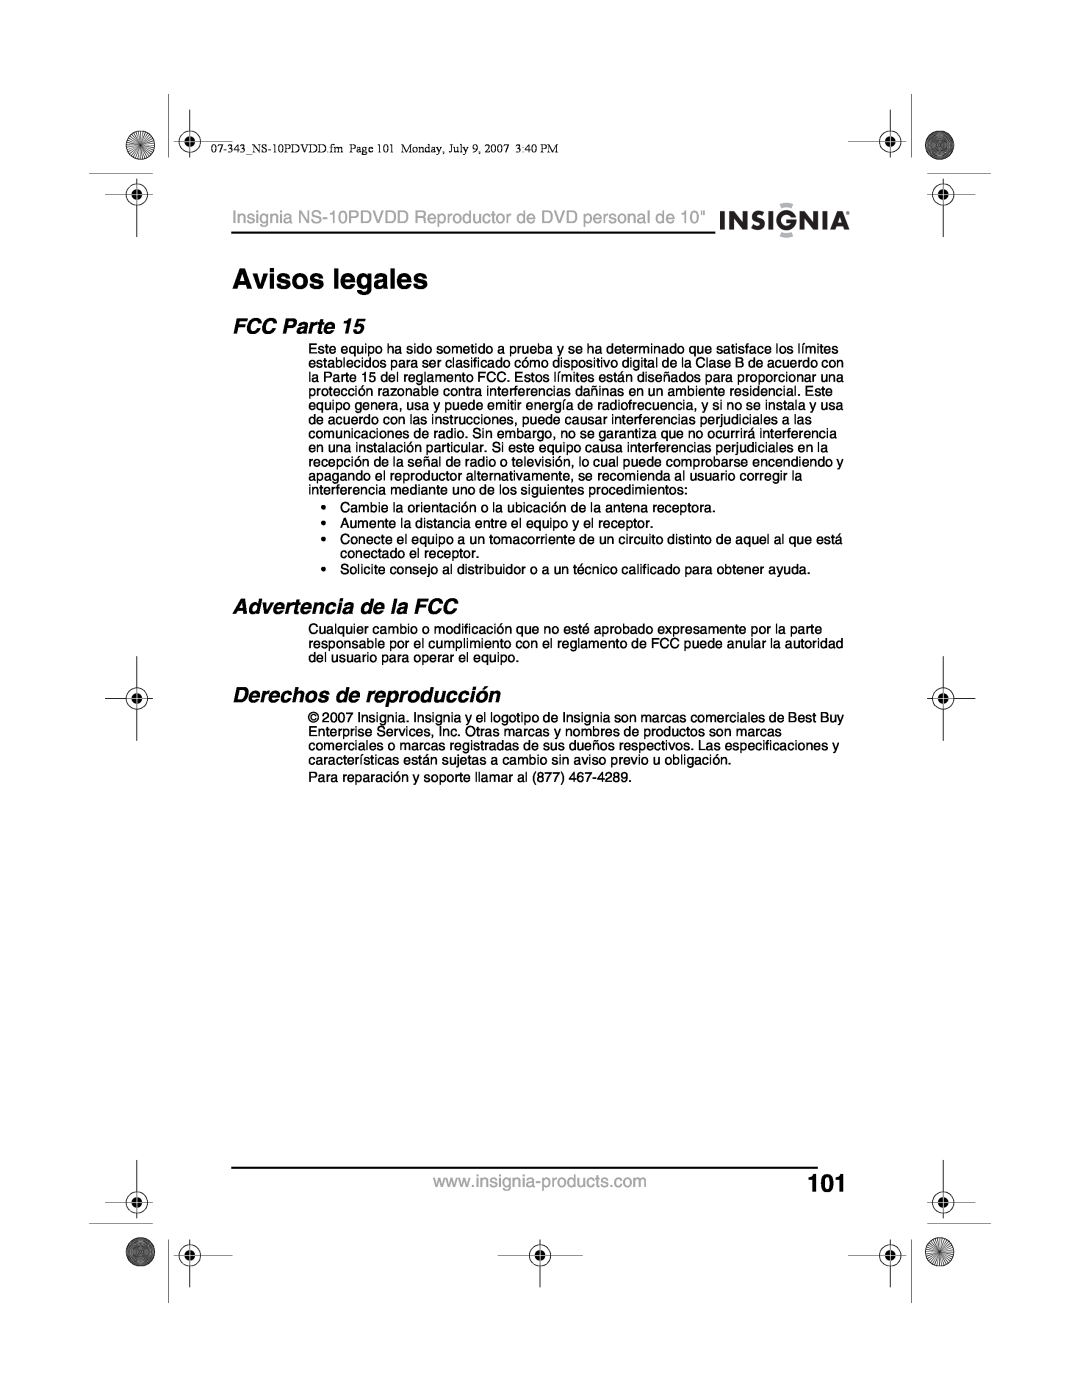 Insignia NS-10PDVDD manual Avisos legales, FCC Parte, Advertencia de la FCC, Derechos de reproducción 